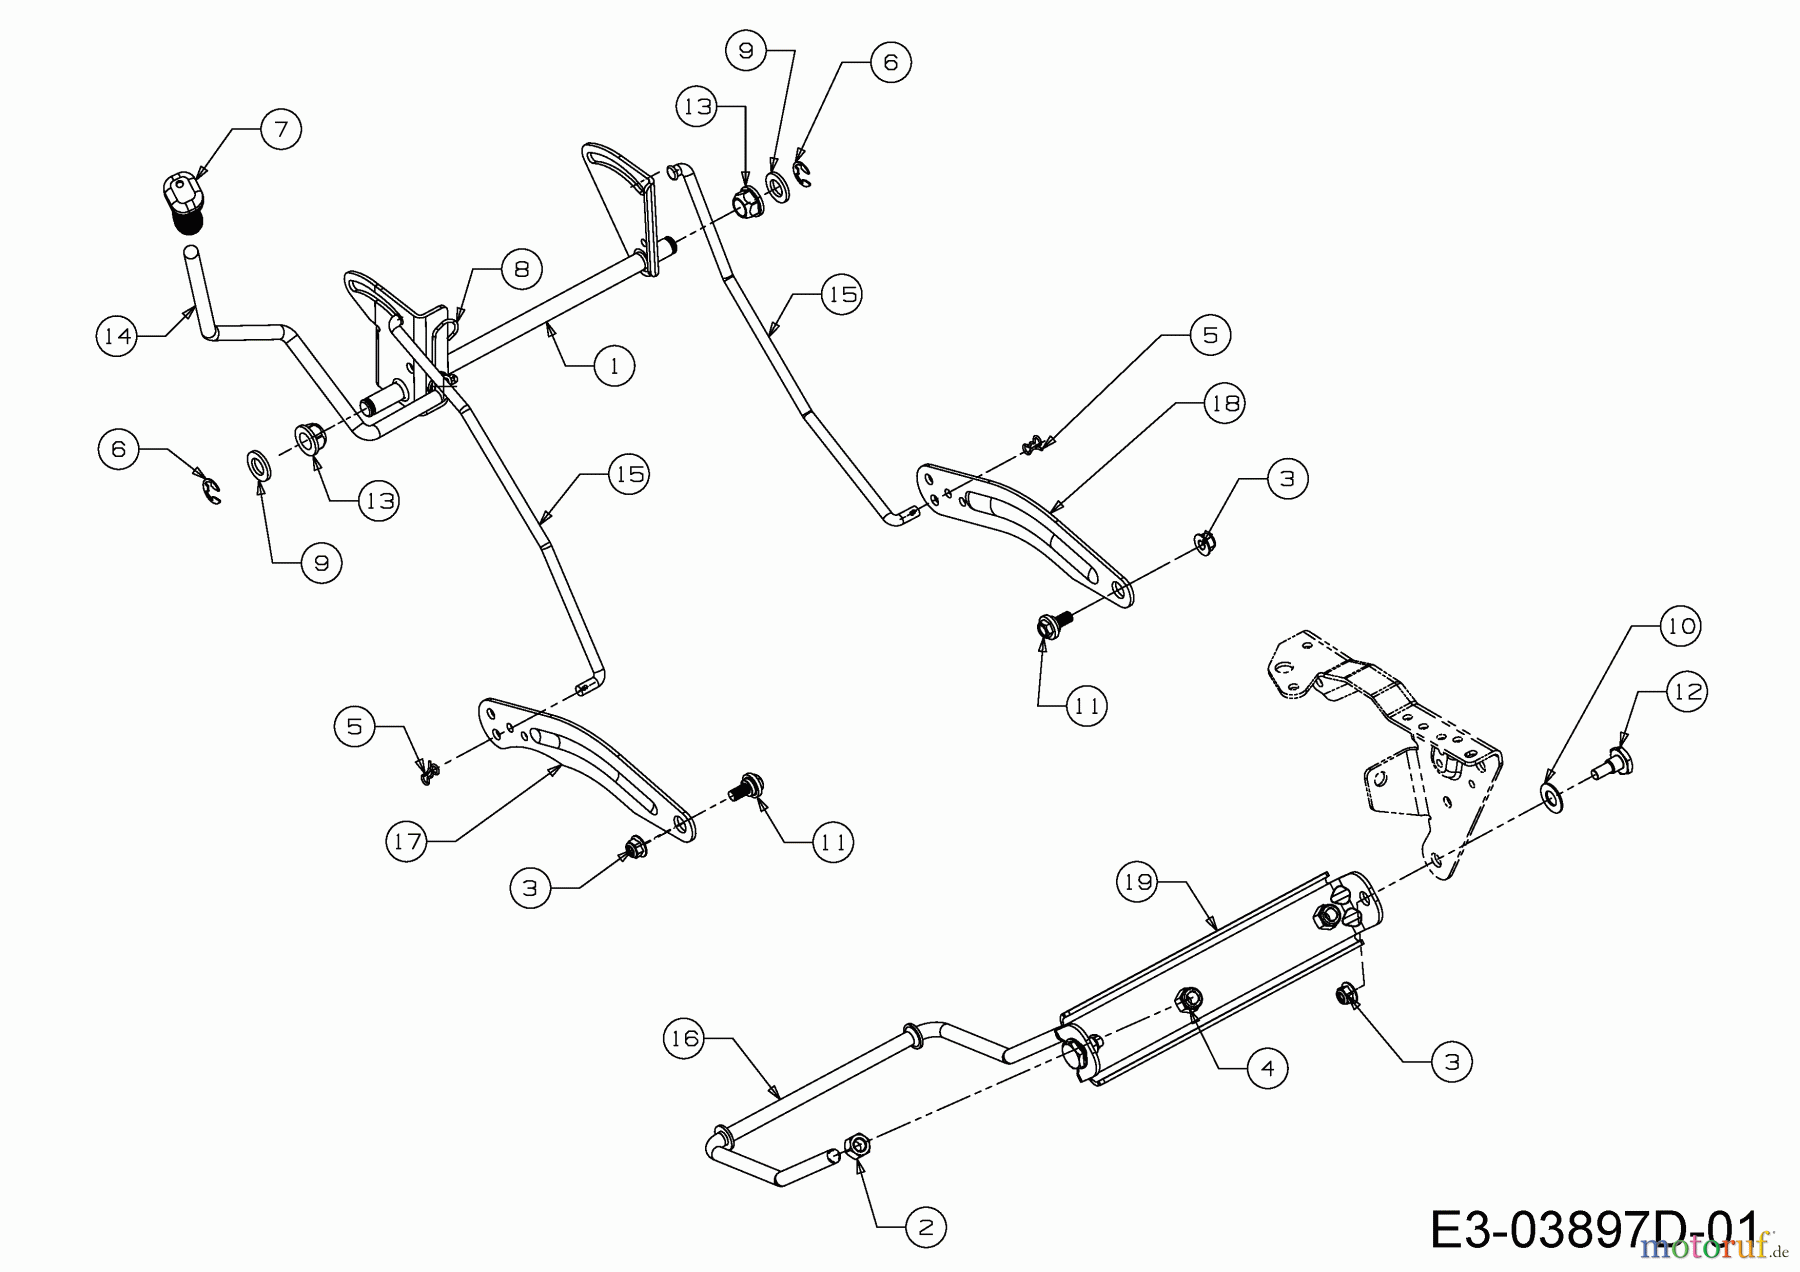  WOLF-Garten Expert Rasentraktoren E 13/92 T 13I2765E650  (2017) Mähwerksaushebung